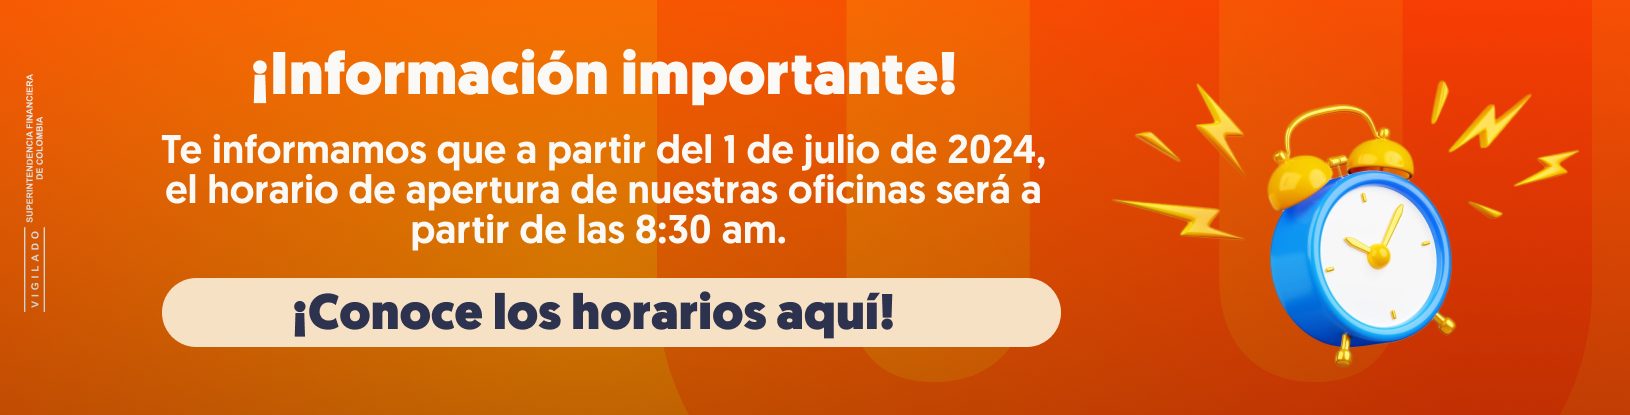 ¡Información importante! Te informamos que a partir del 1 de julio de 2024, el horario de apertura de nuestras oficinas será a partir de las 8:30 a.m. ¡Conoce los horarios aquí!